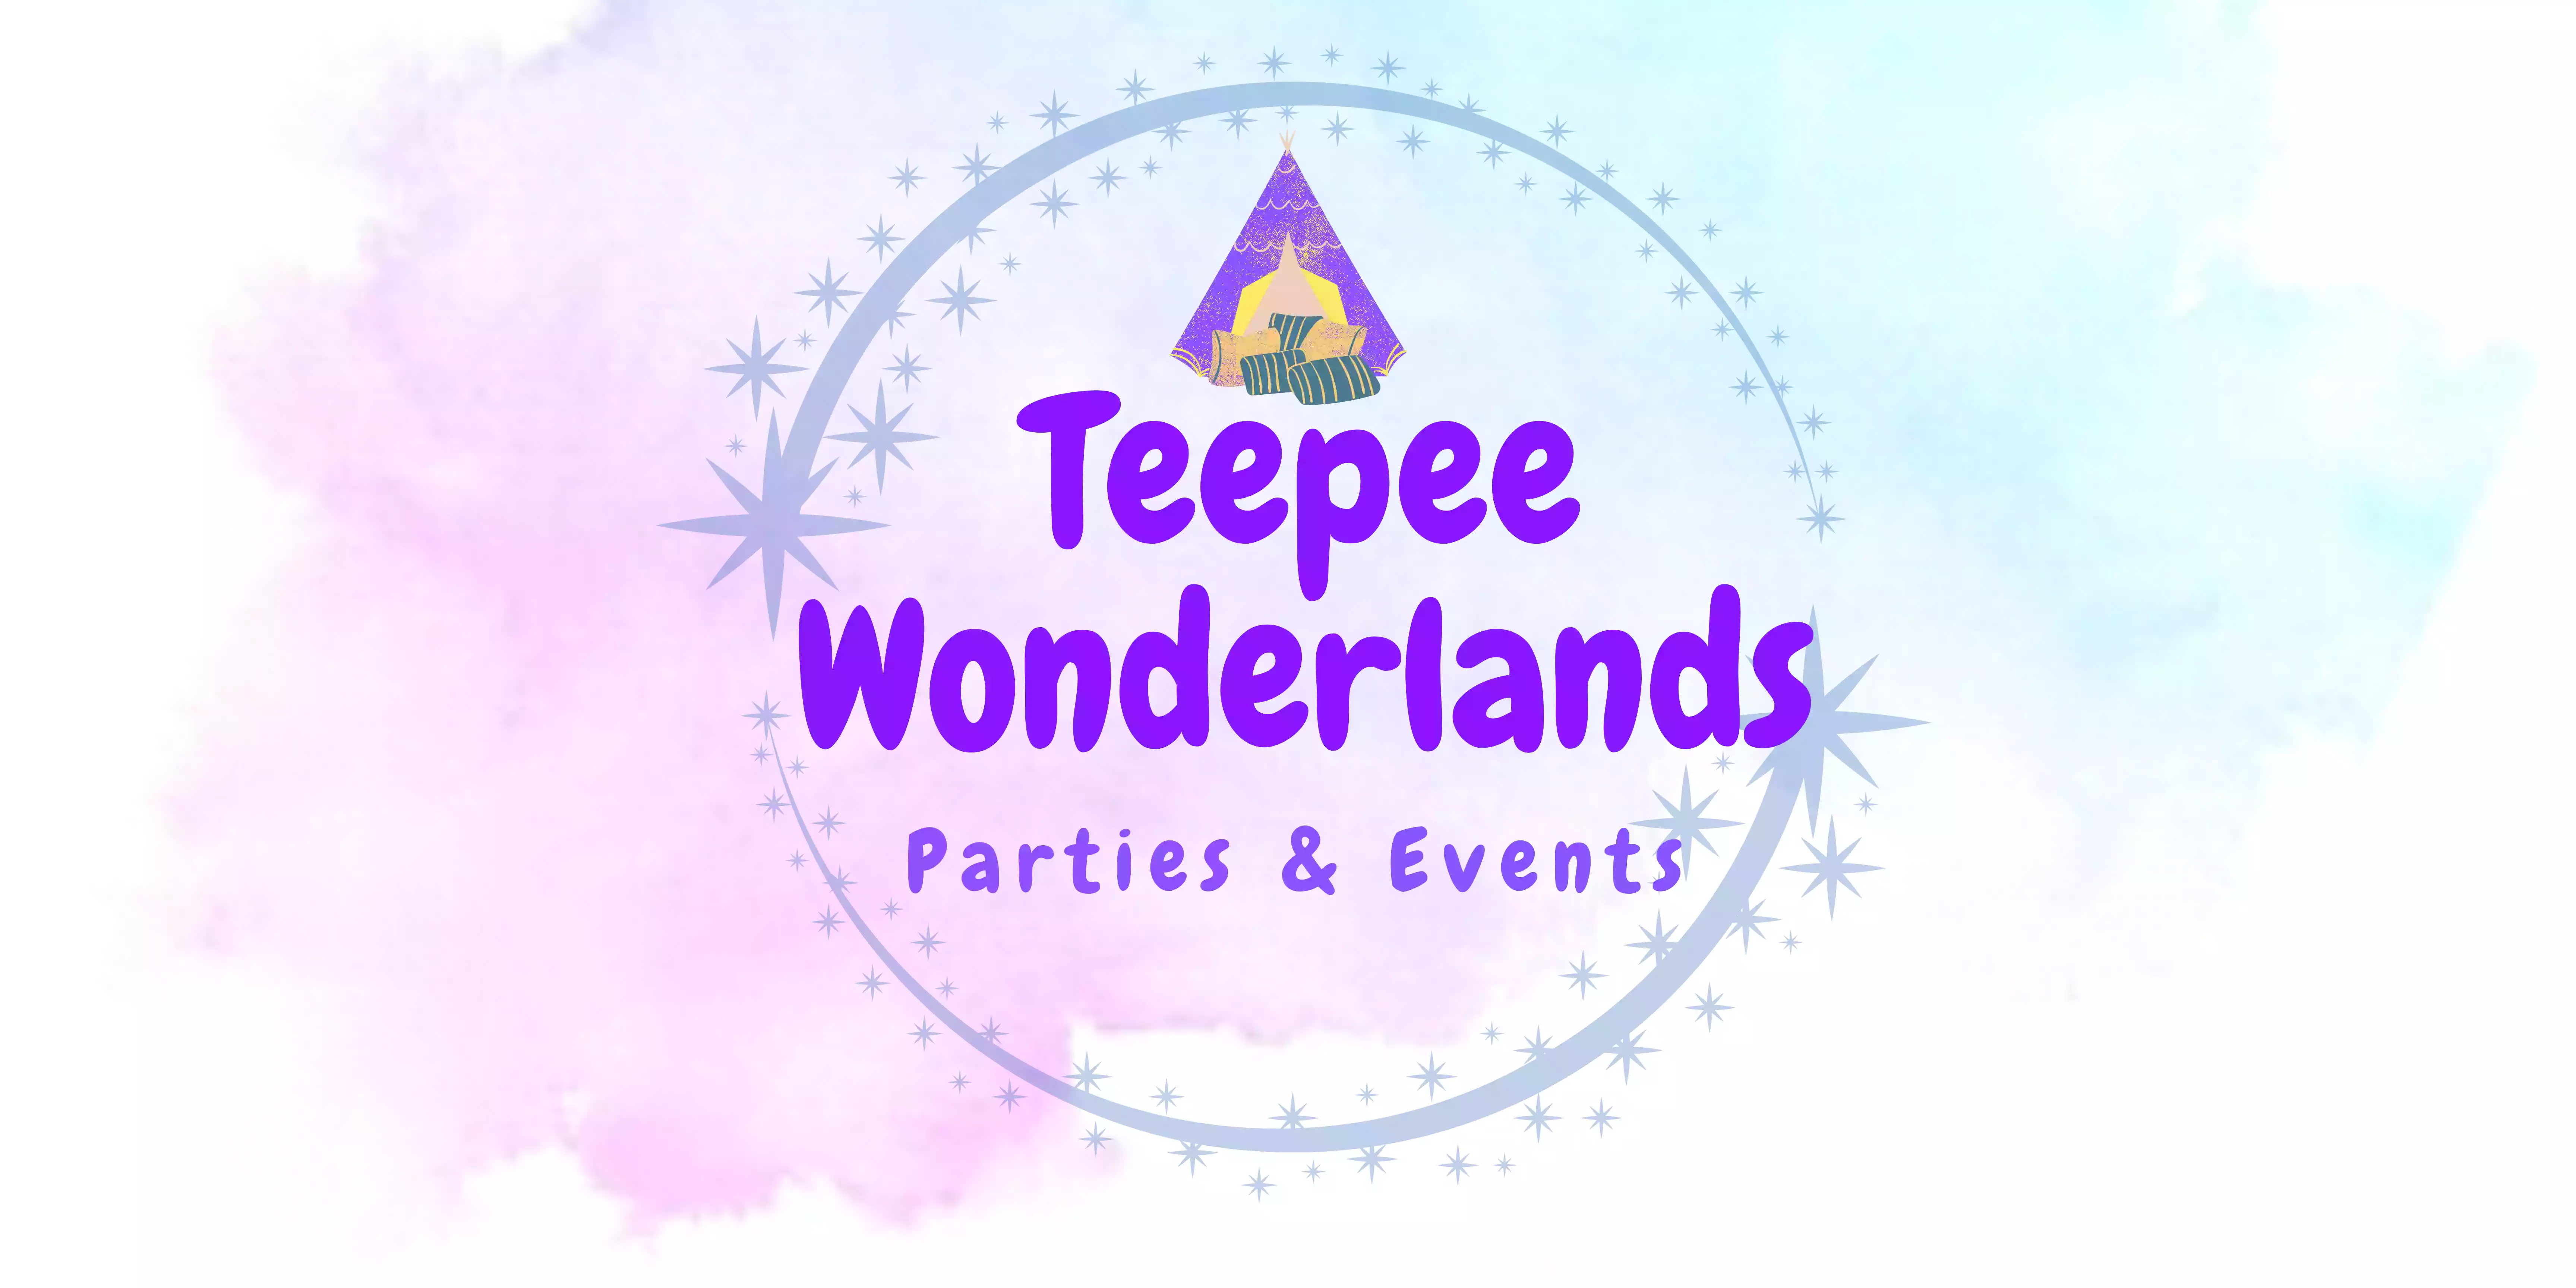 Teepee Wonderlands